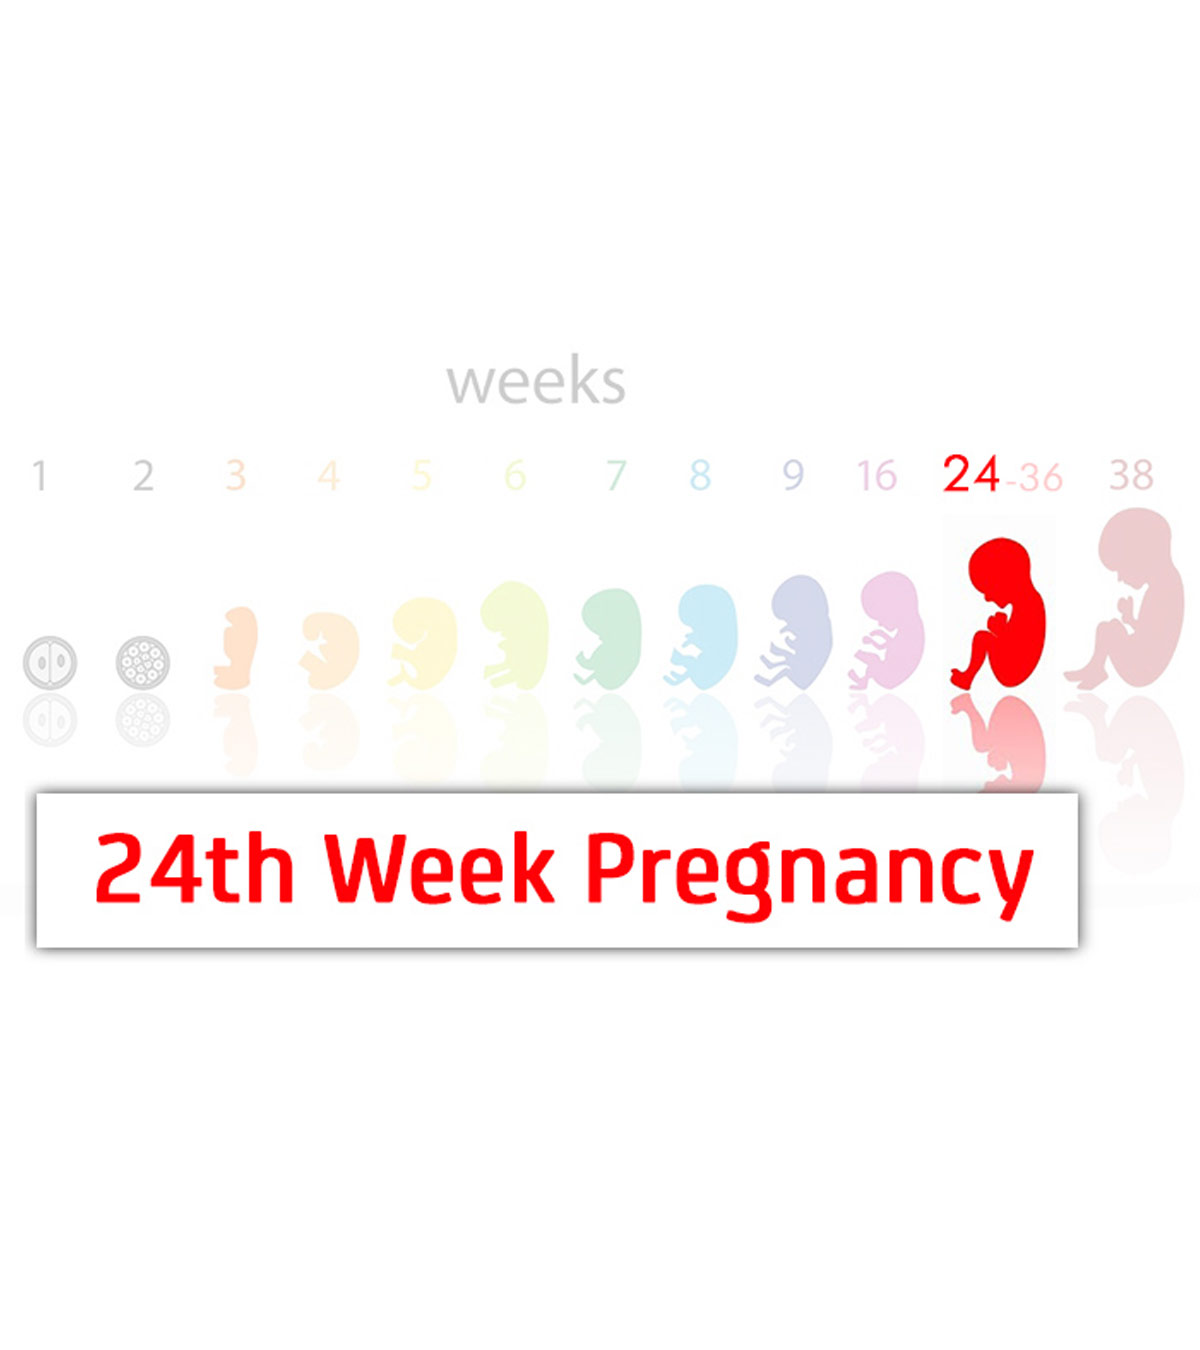 第24周怀孕:症状，婴儿发育和提示